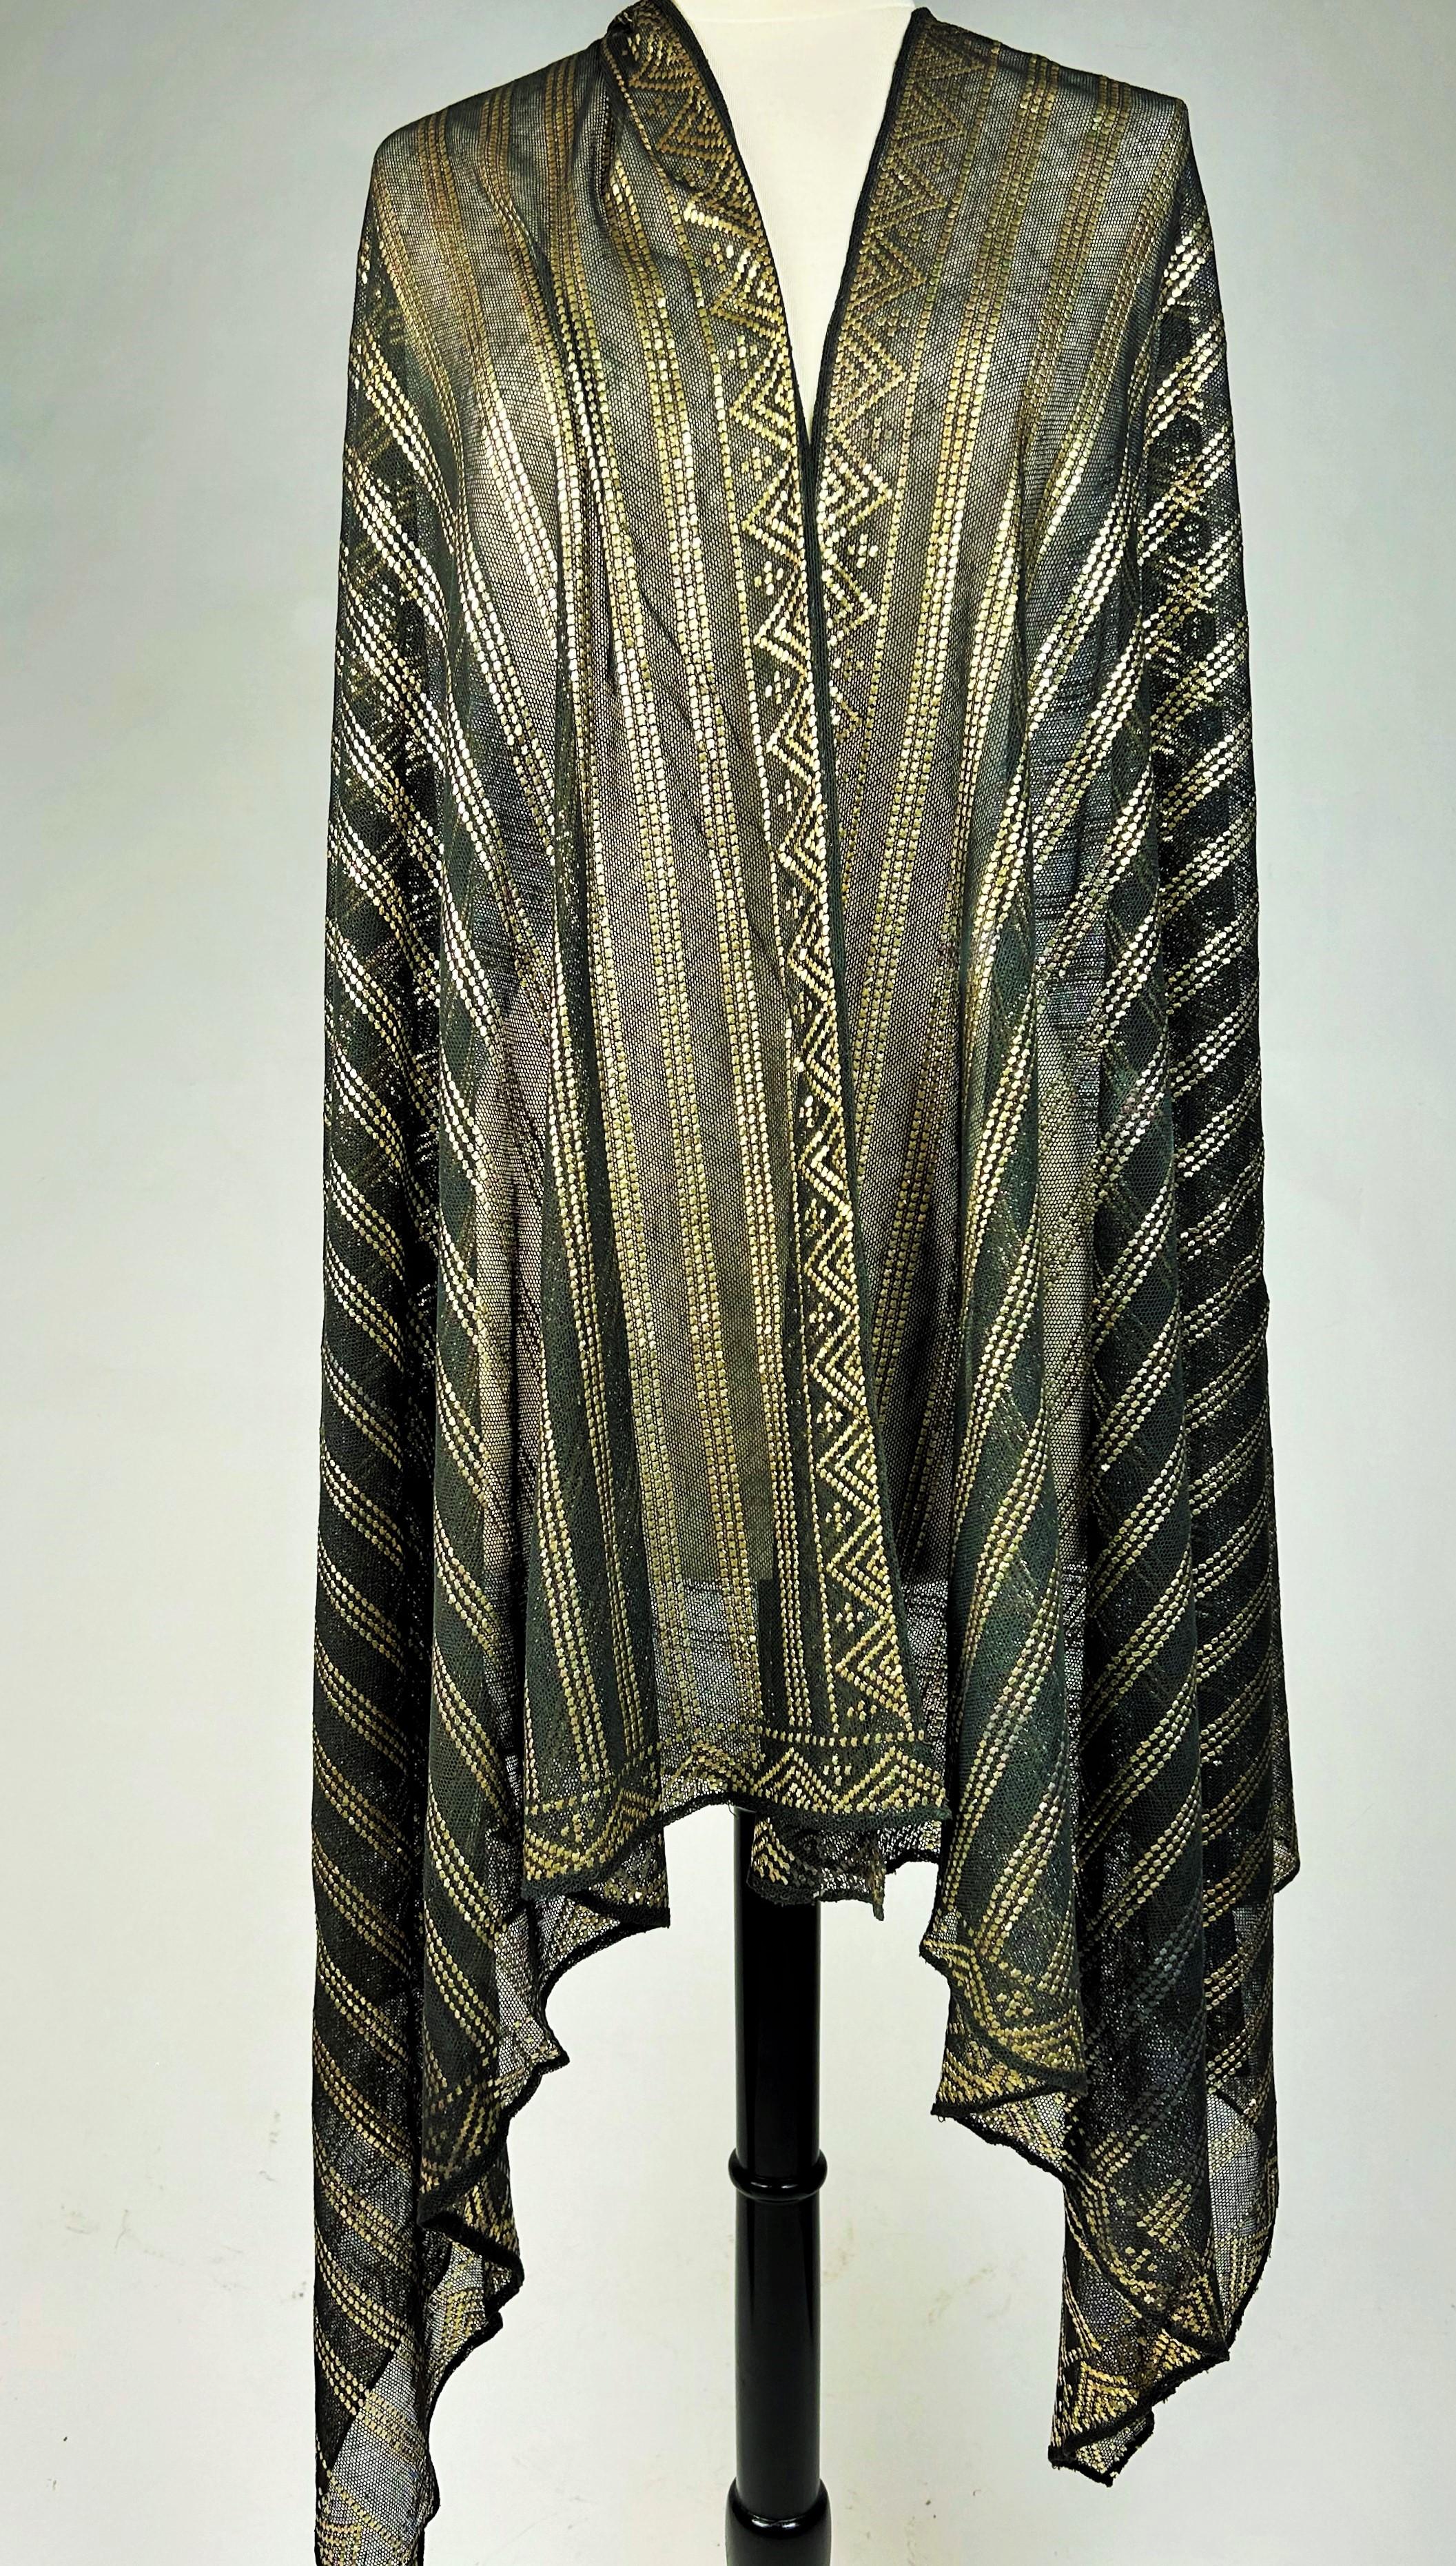 Vers 1930-1940

Égypte

Un élégant châle ou étole noir et or de la période Art déco, connu sous le nom de châle Assuit, fabriqué en Égypte pour la mode occidentale dans les années 1920-1940. L'engouement pour l'égyptomanie a commencé en Europe après